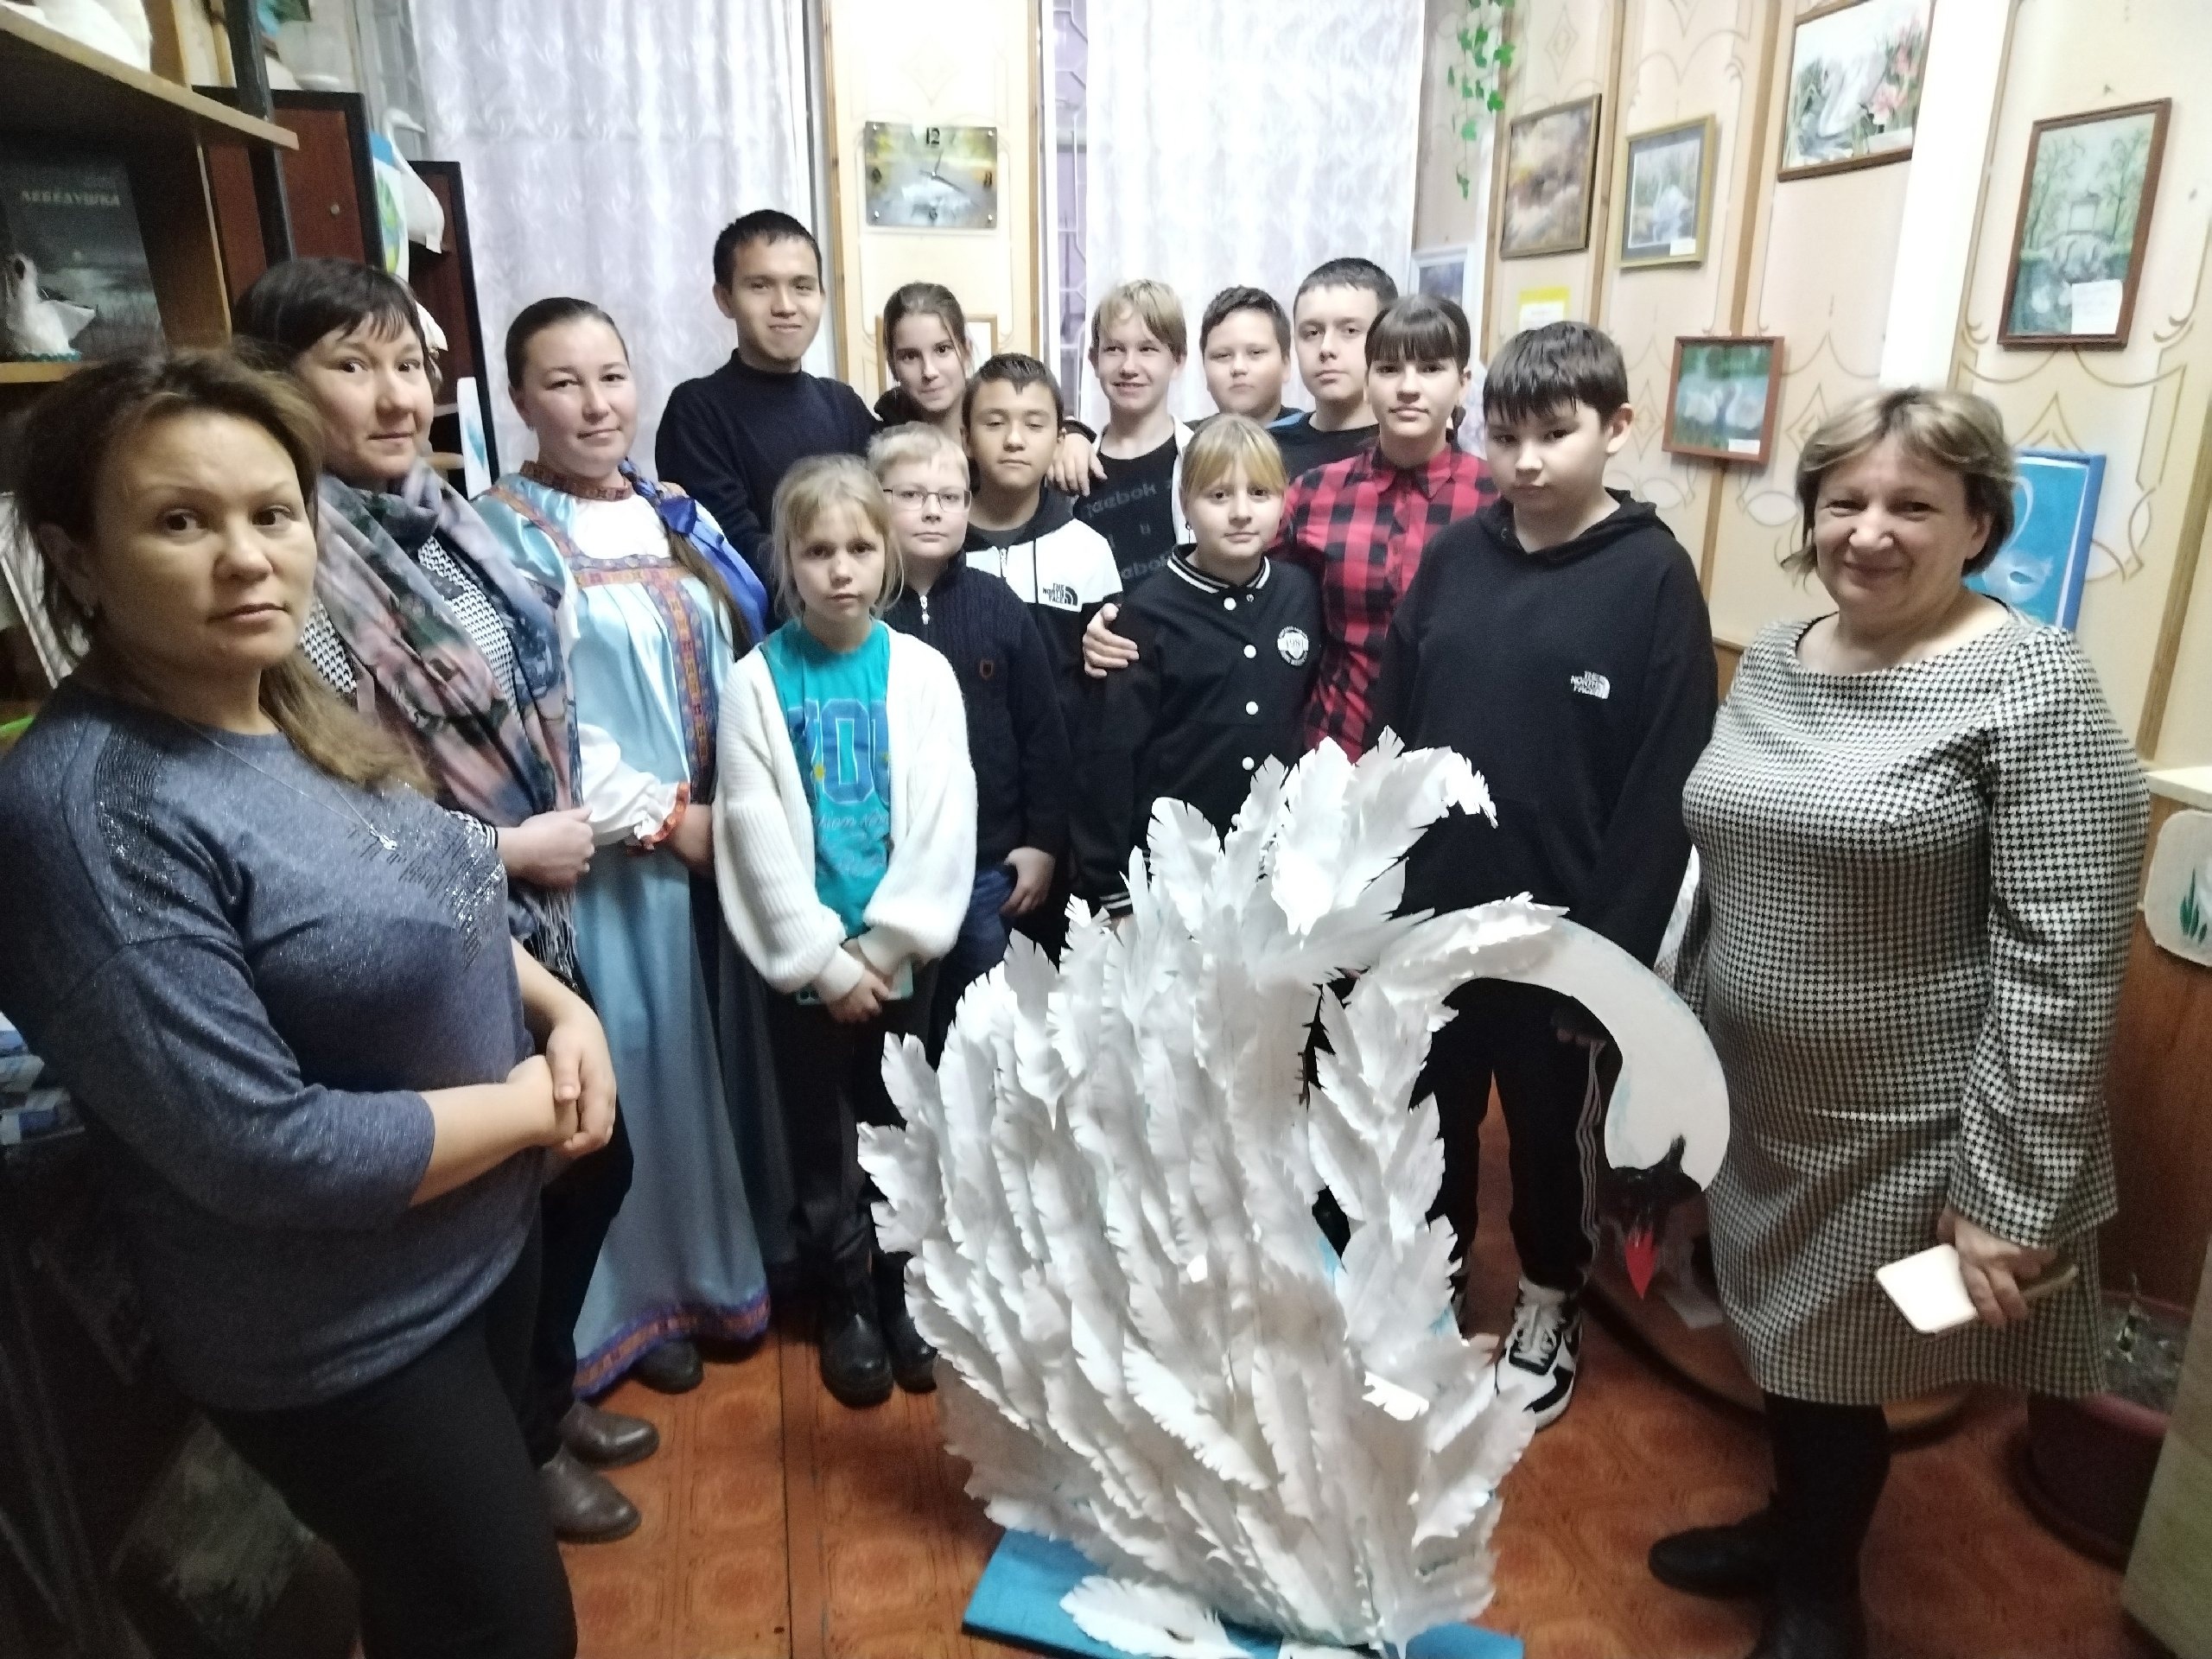 15 ноября Туристско-информационный центр Макушинского муниципального округа организовал экскурсионную поездку в п. Лебяжье.